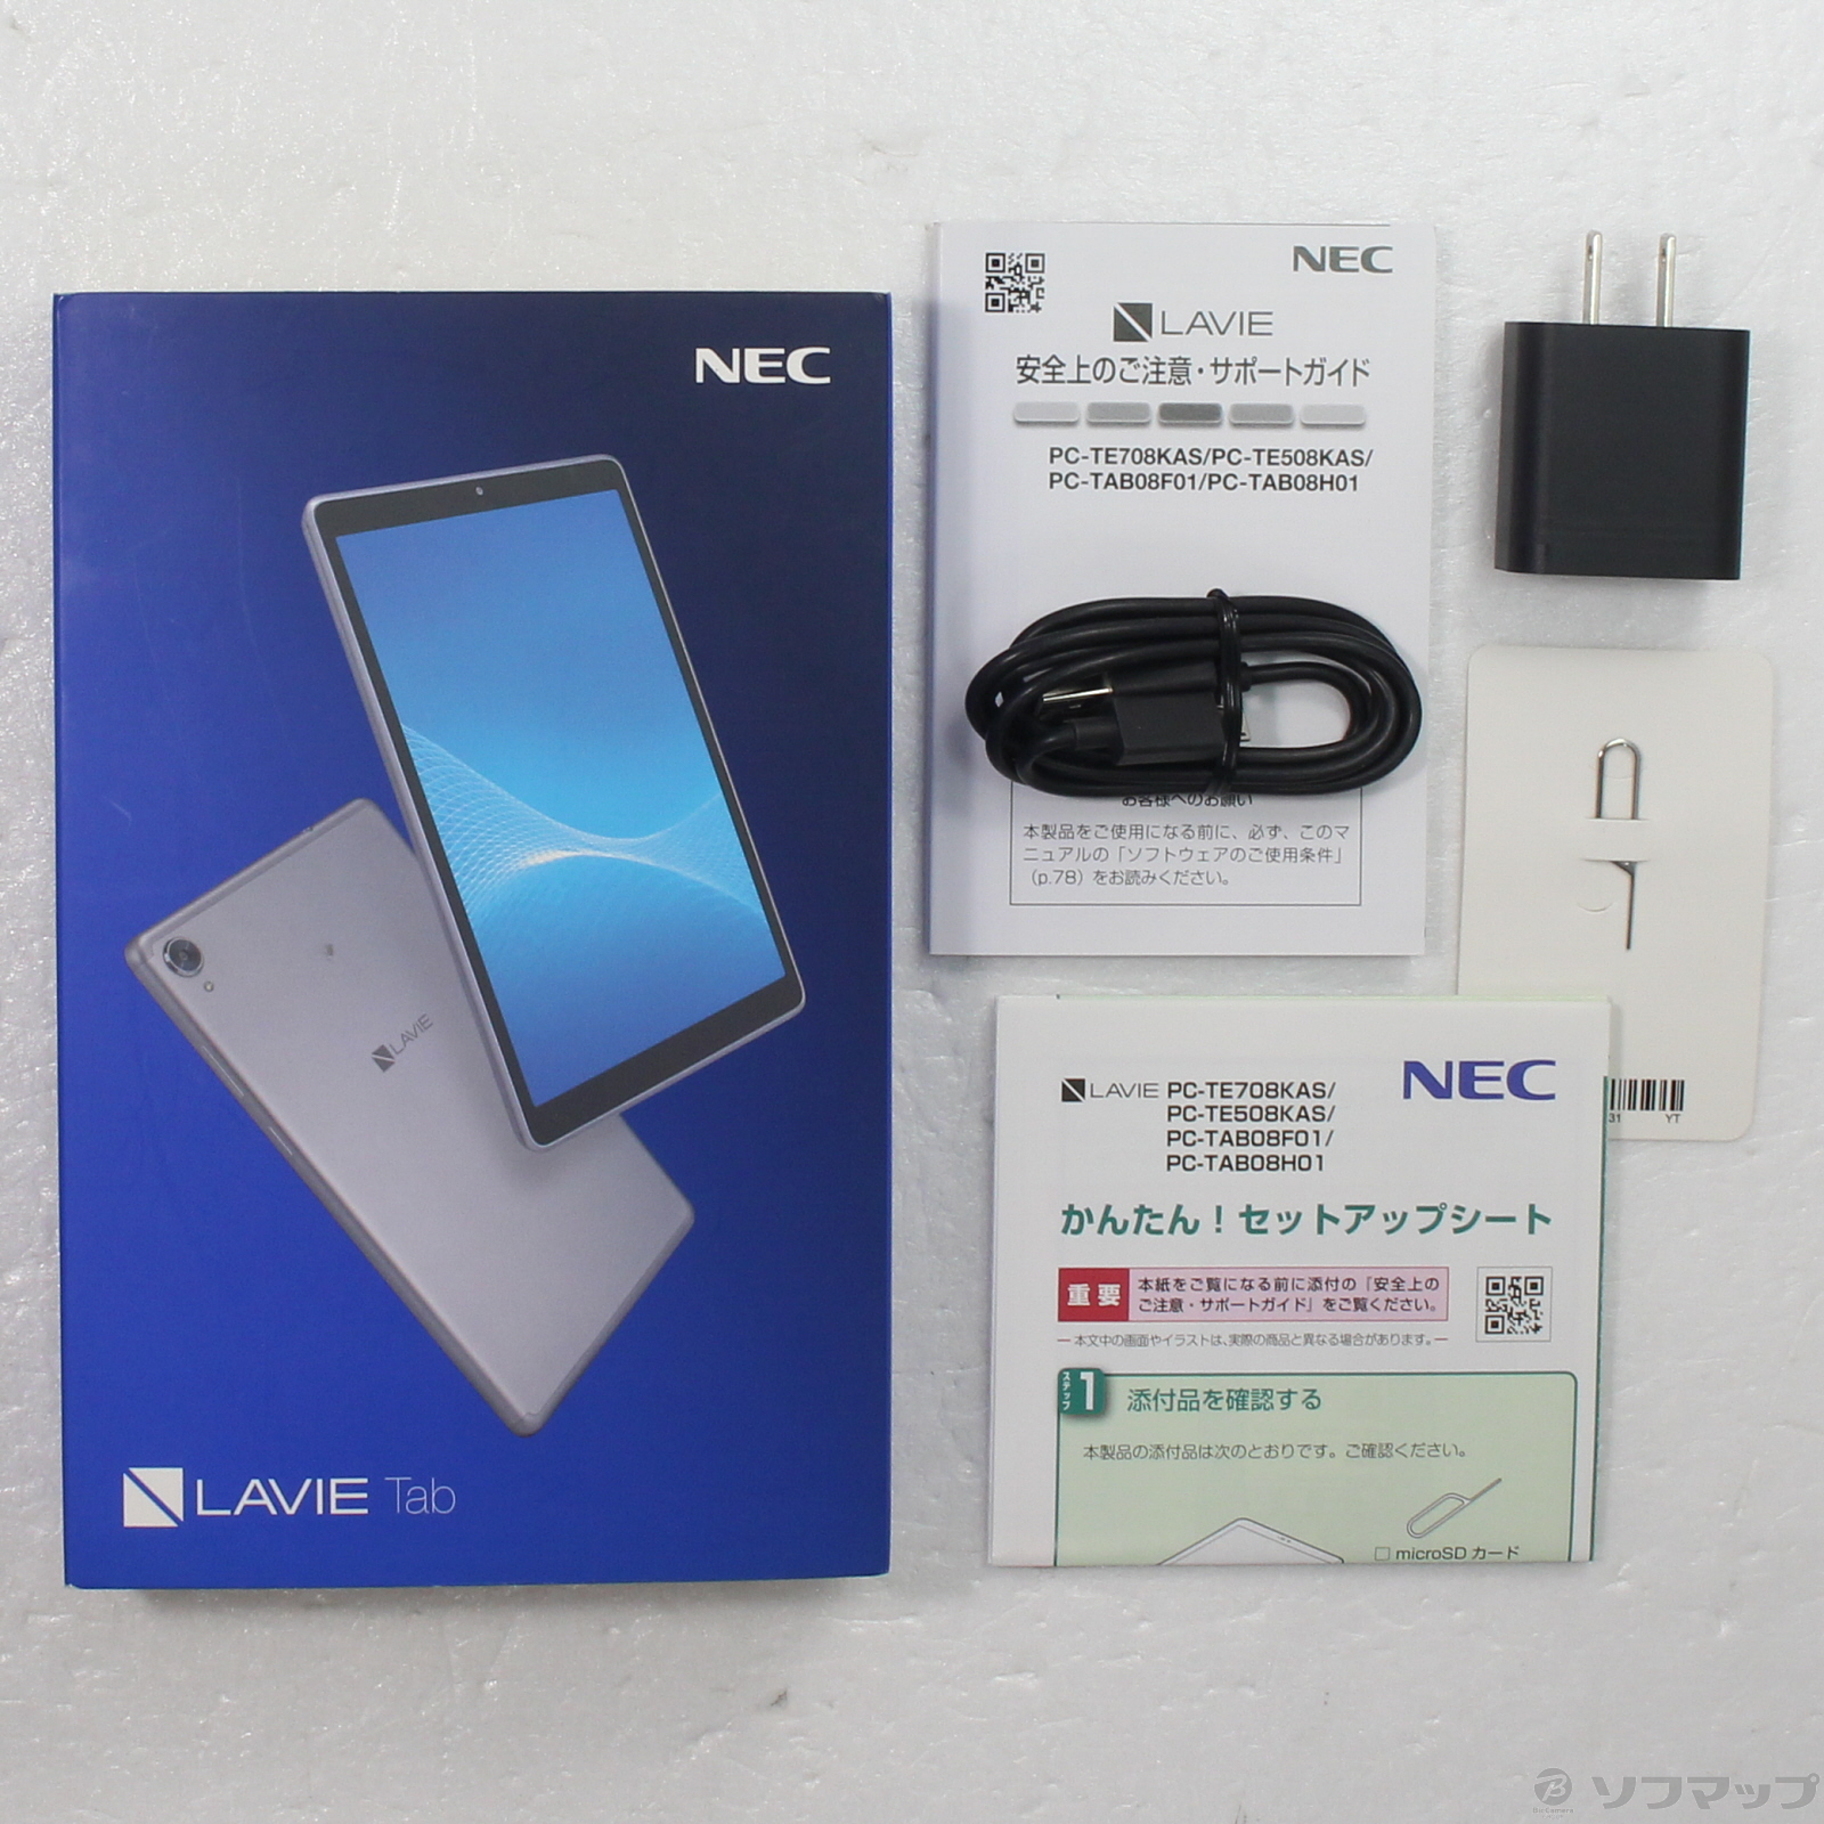 特価正規品NEC タブレットLaVieTab グレーE PC-TE708KAS タブレット